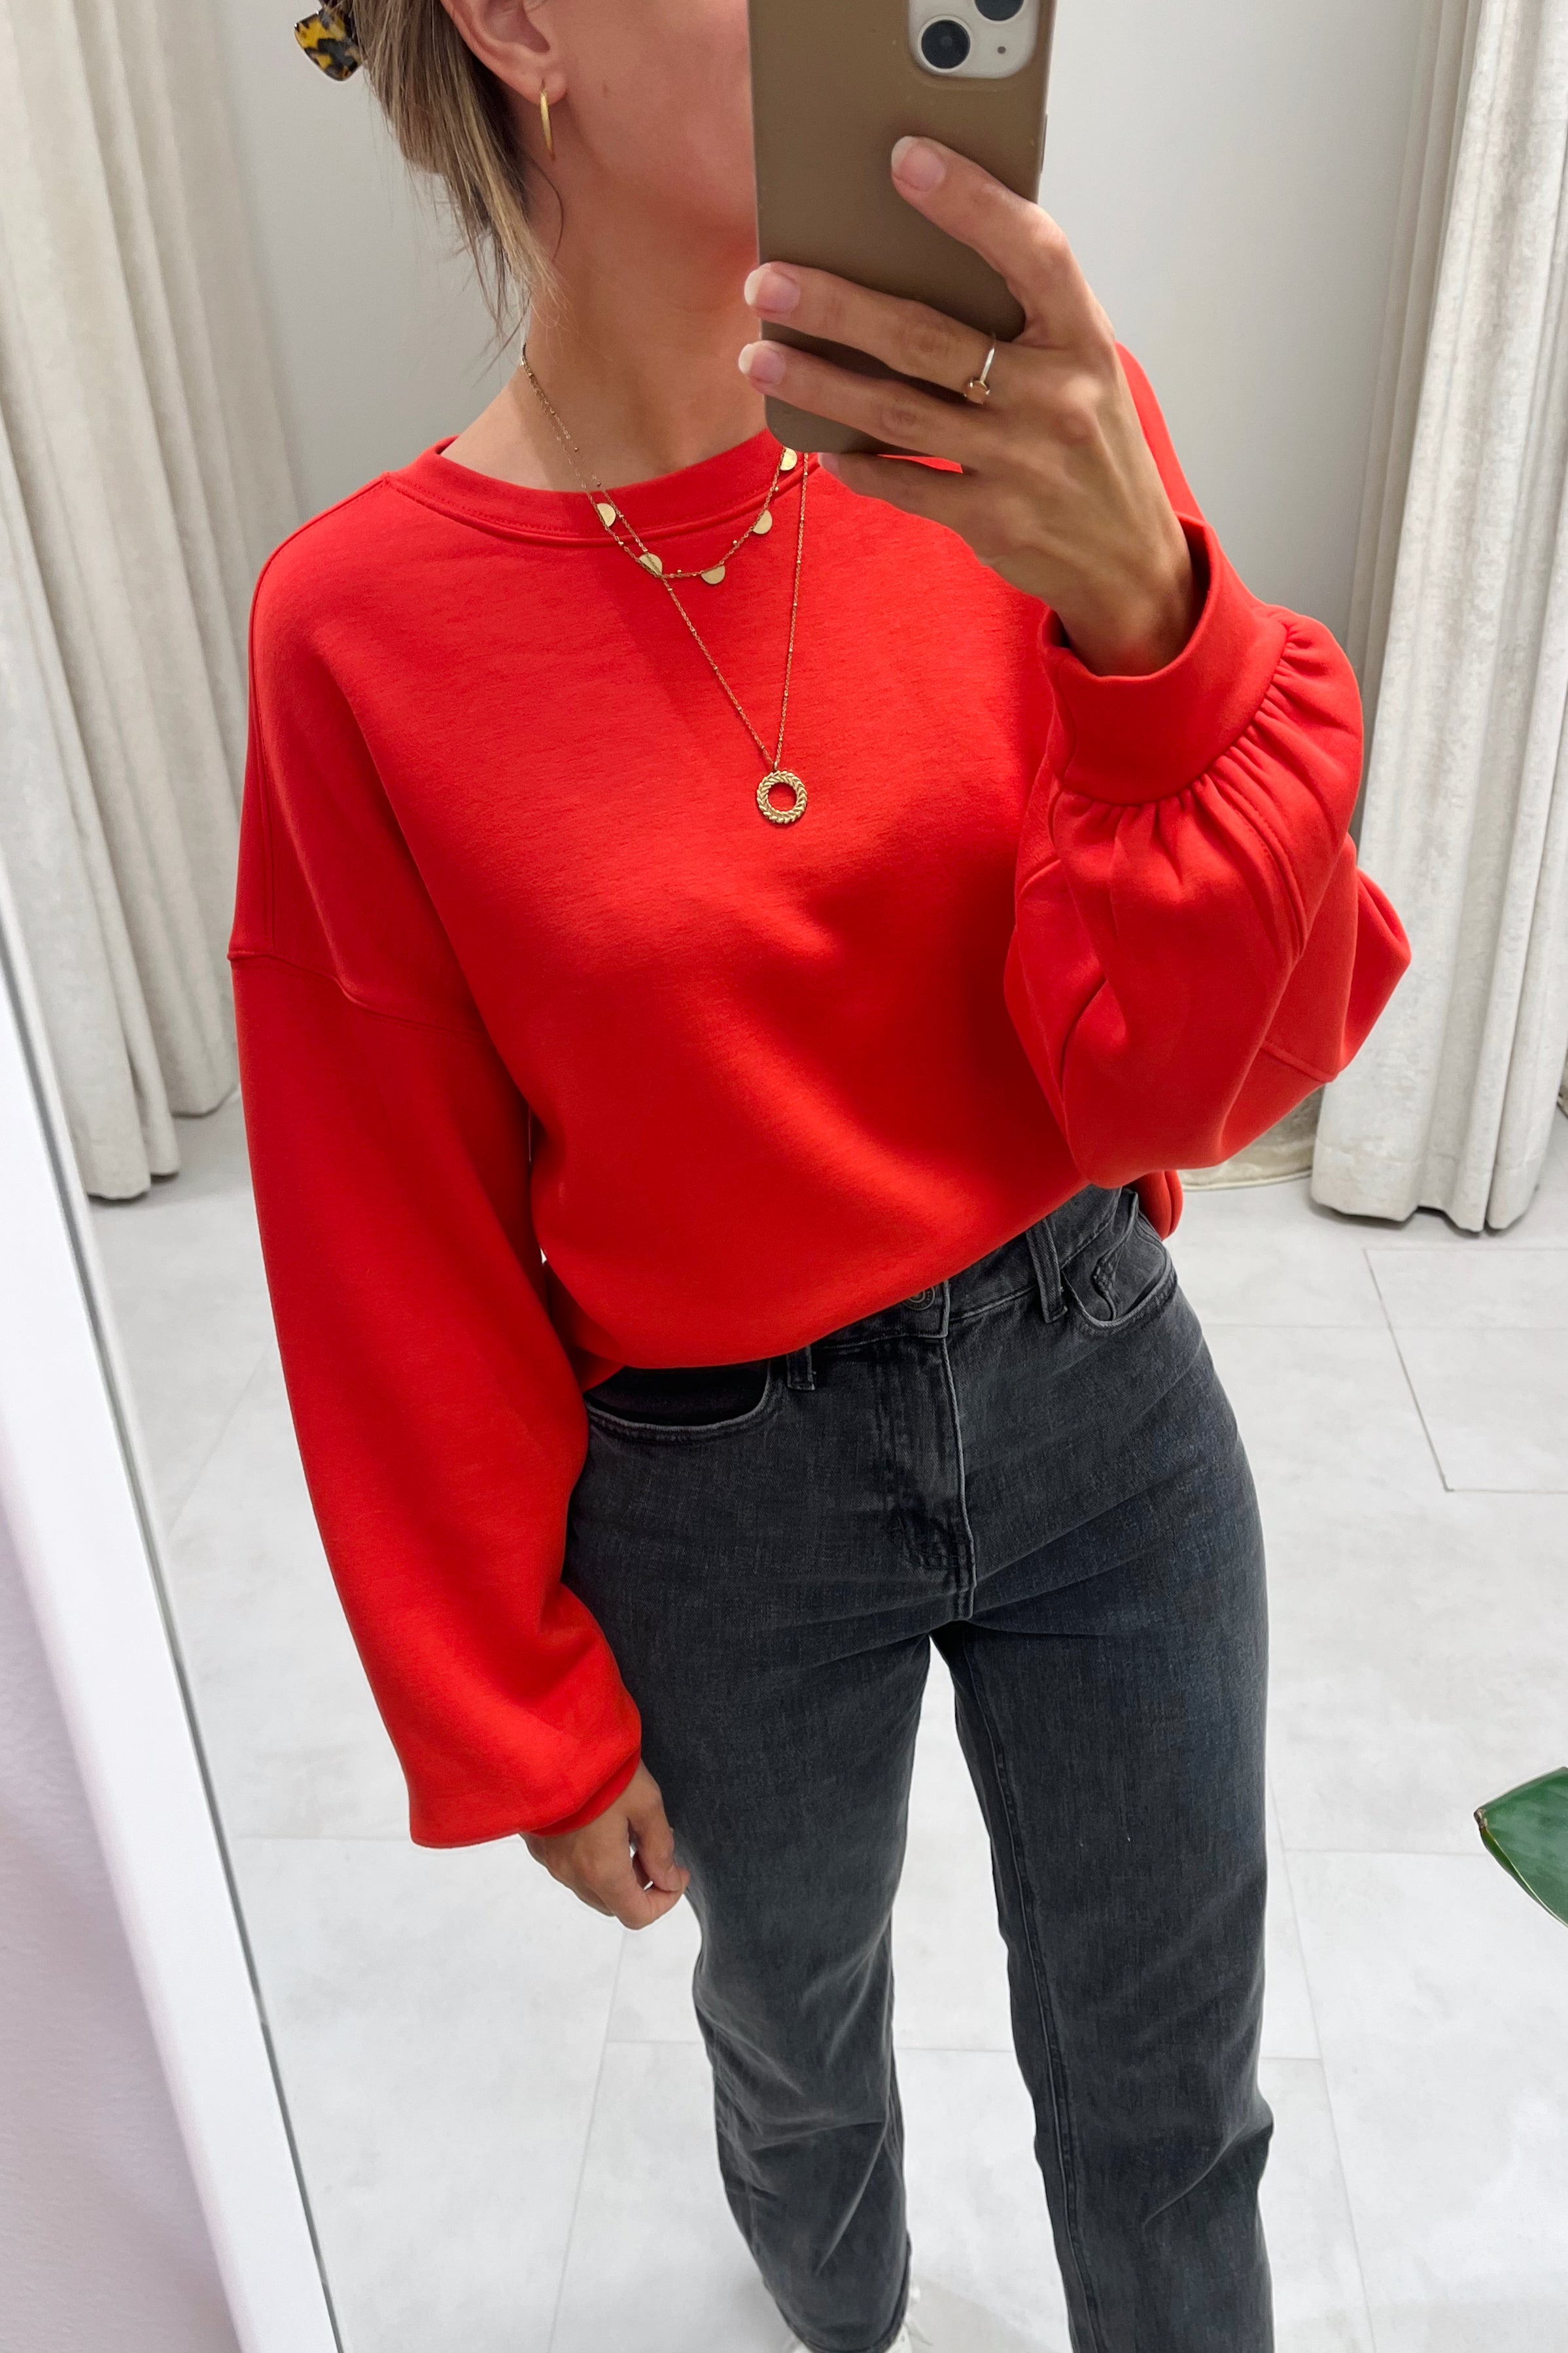 Janelle Lima Sweatshirt / Aurora Red